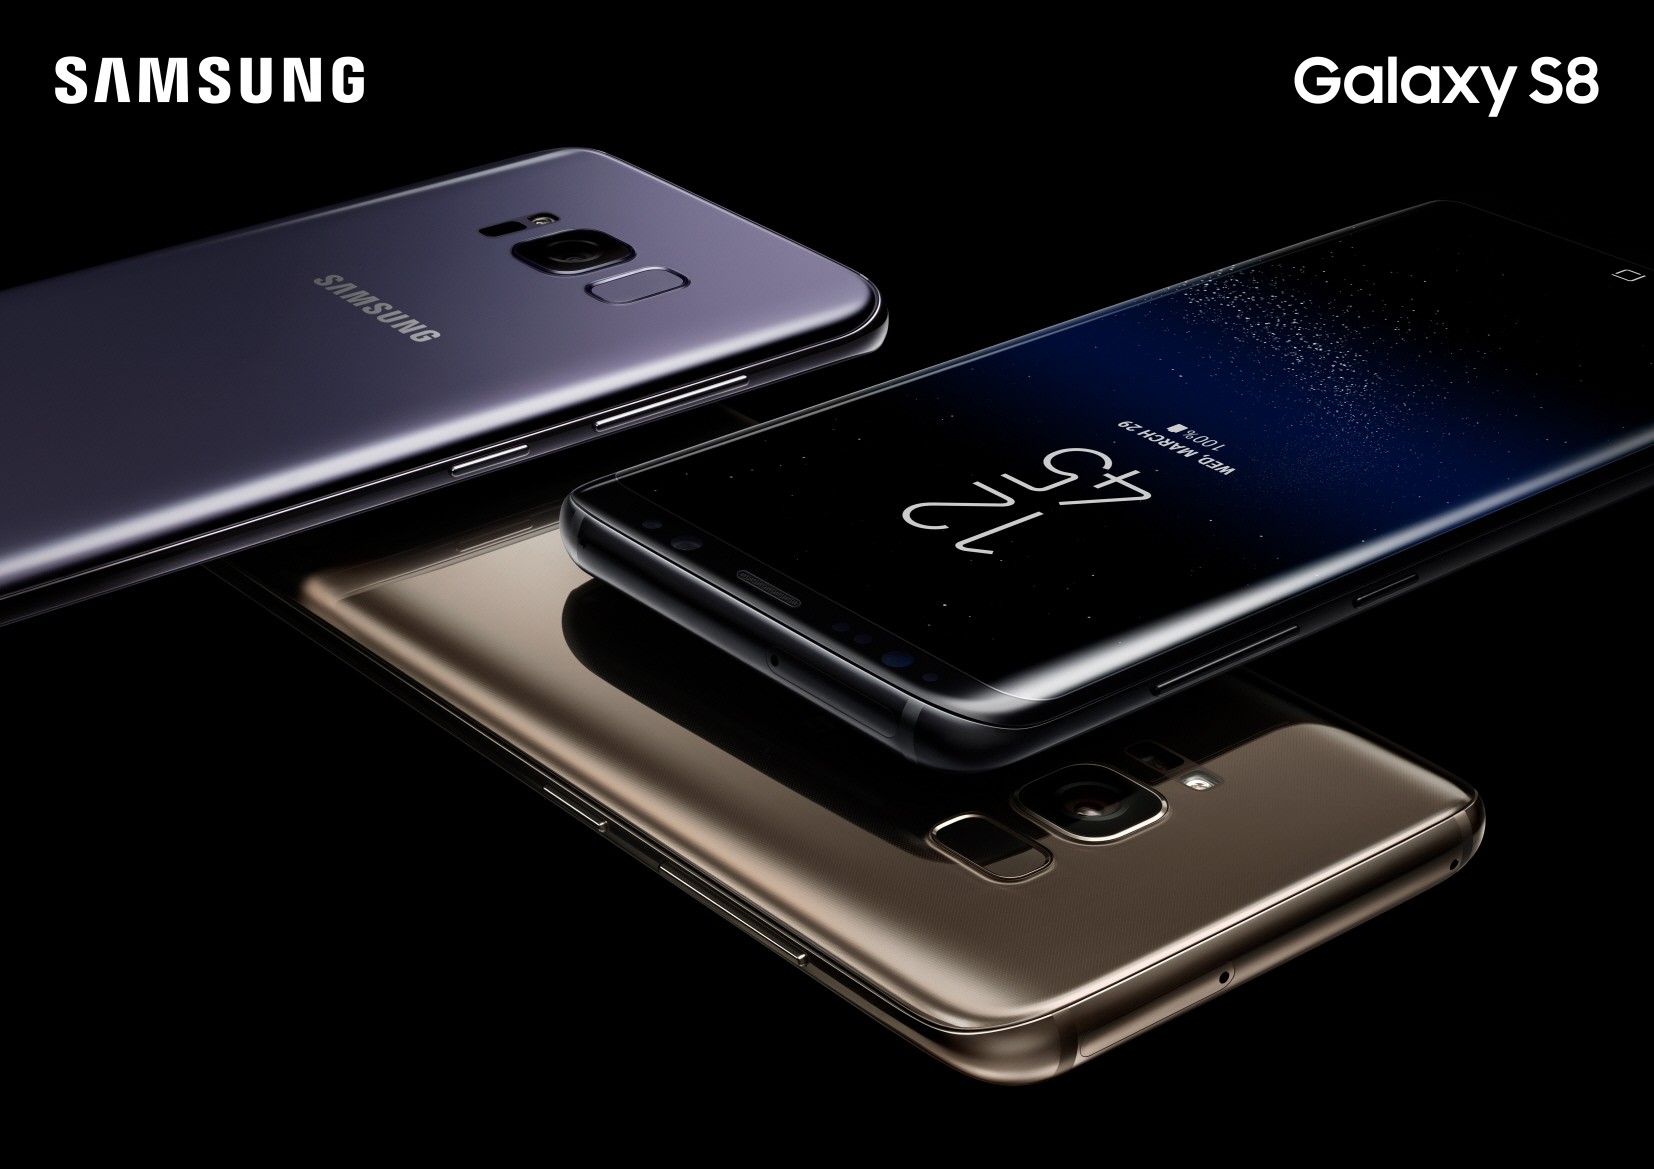 Samsung Galaxy S8 ön siparişleri rekor kırıyor